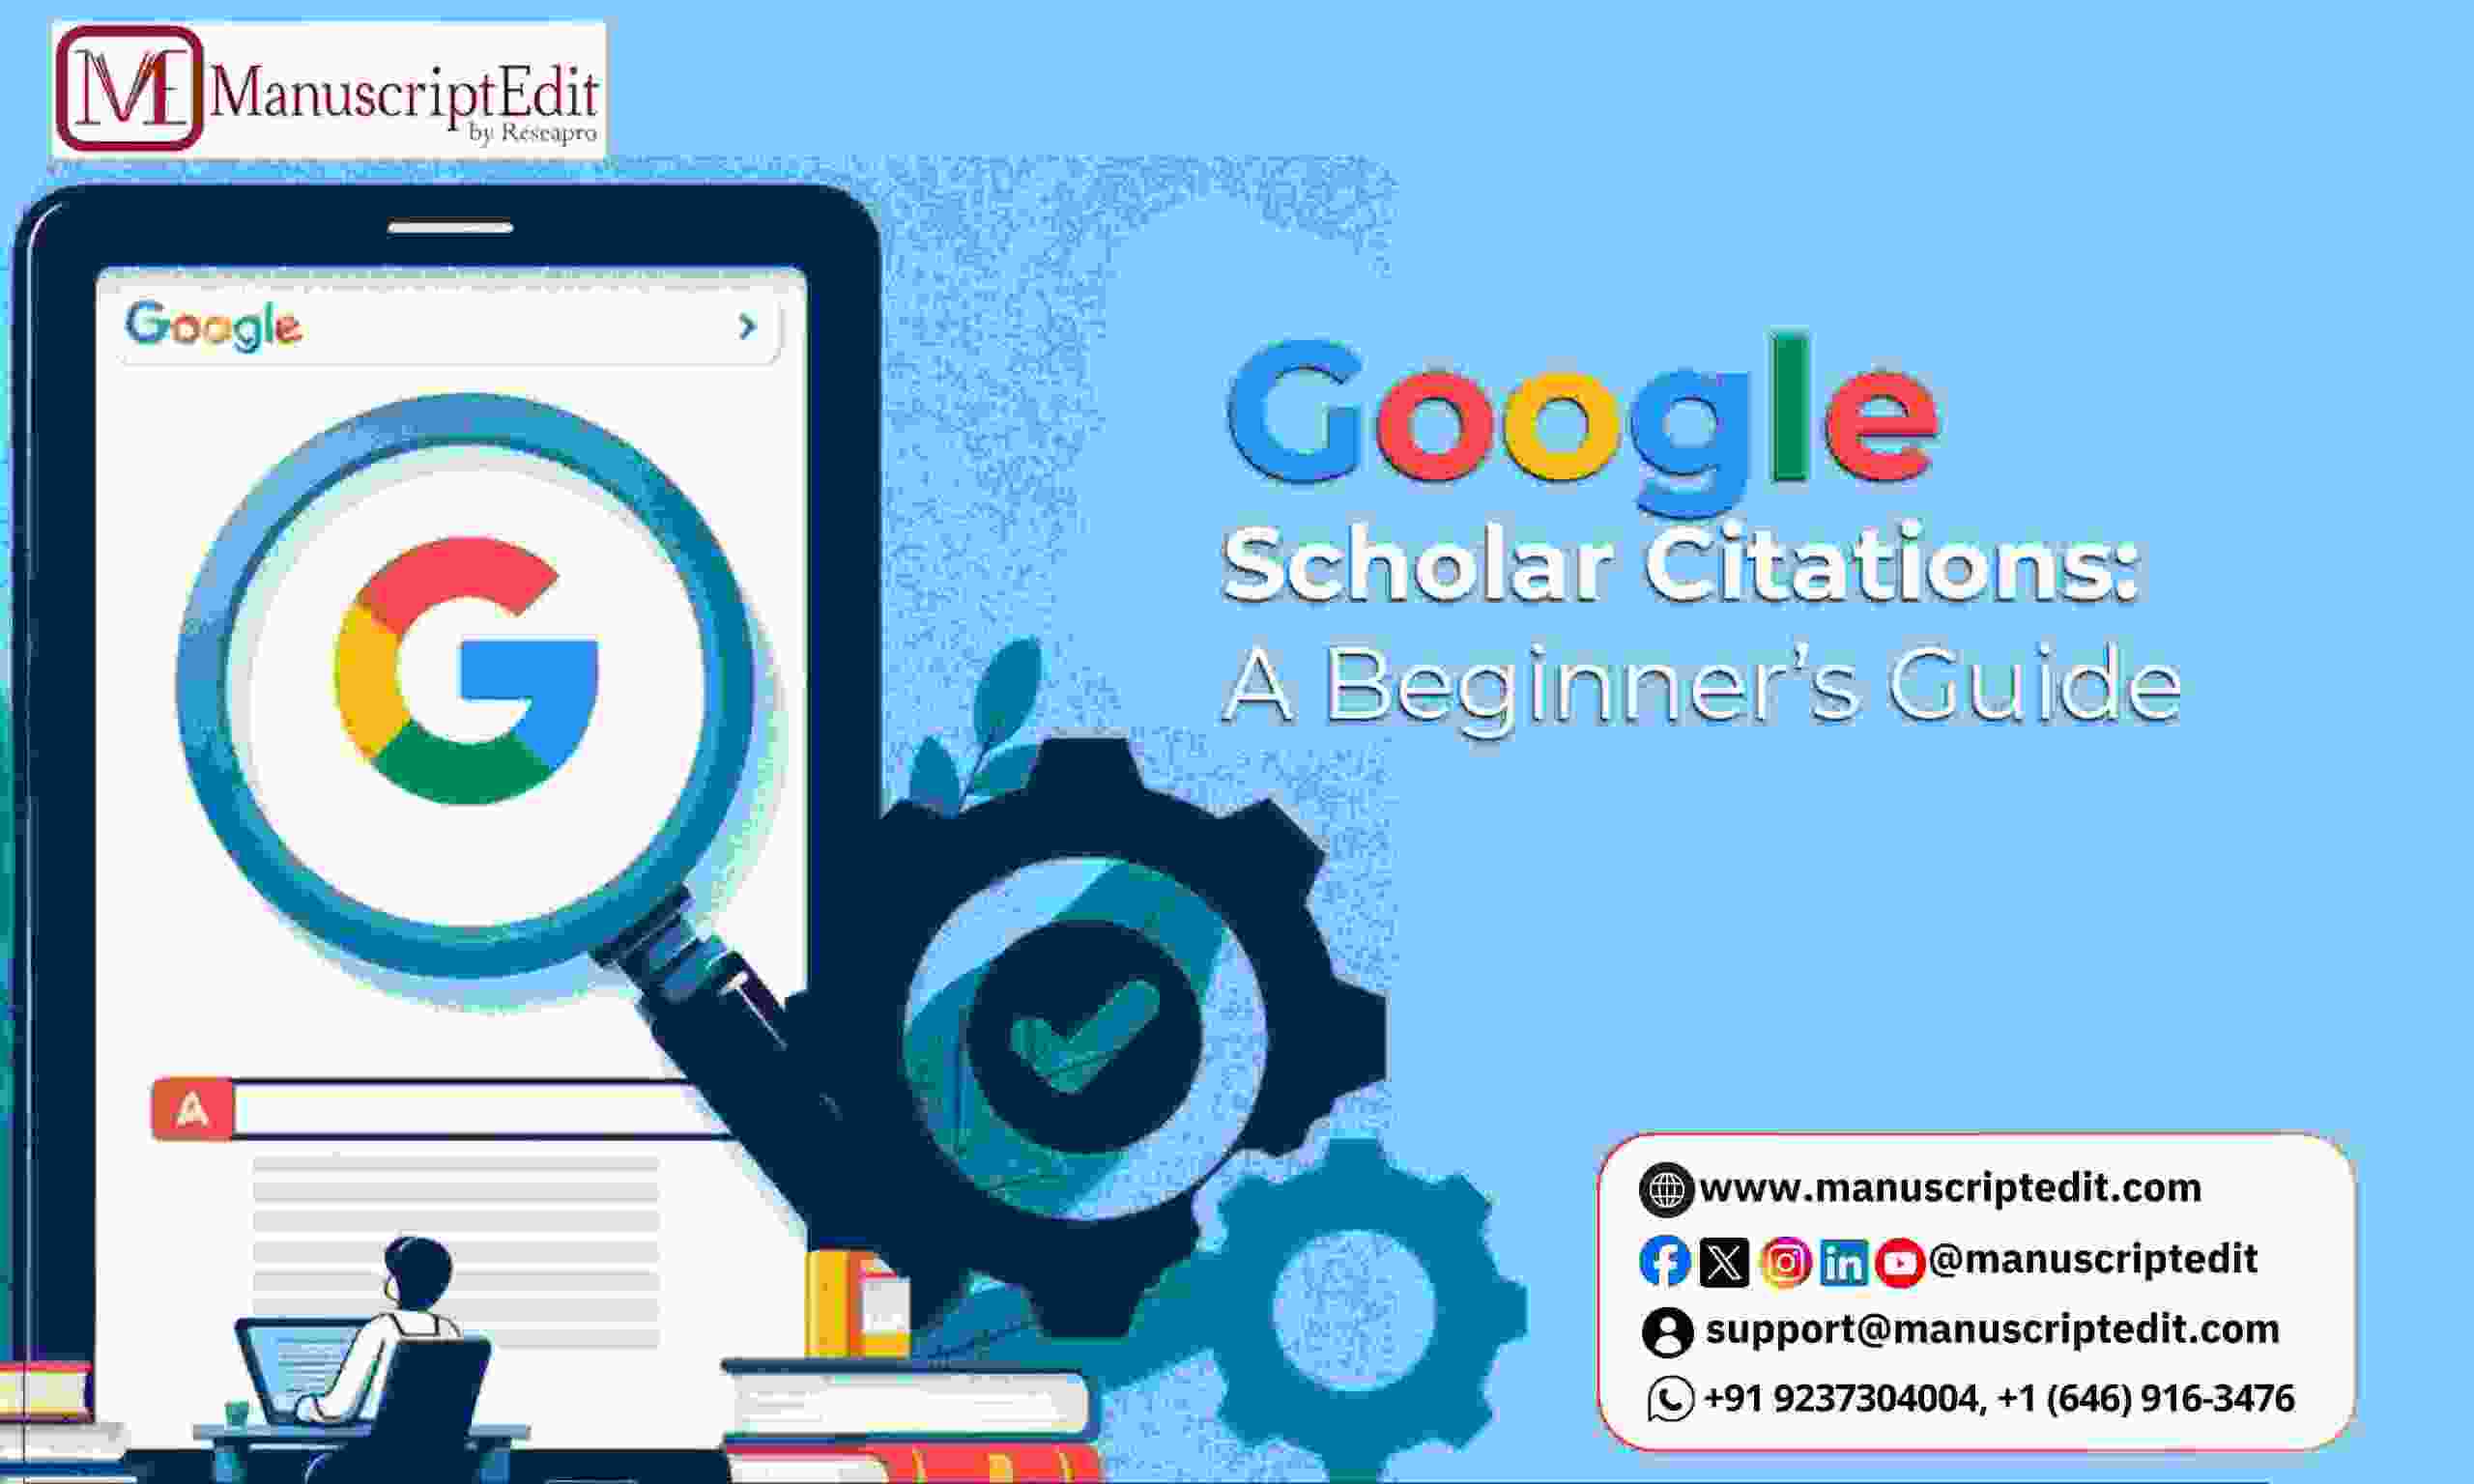 Google Scholar Citations: A Beginner’s Guide